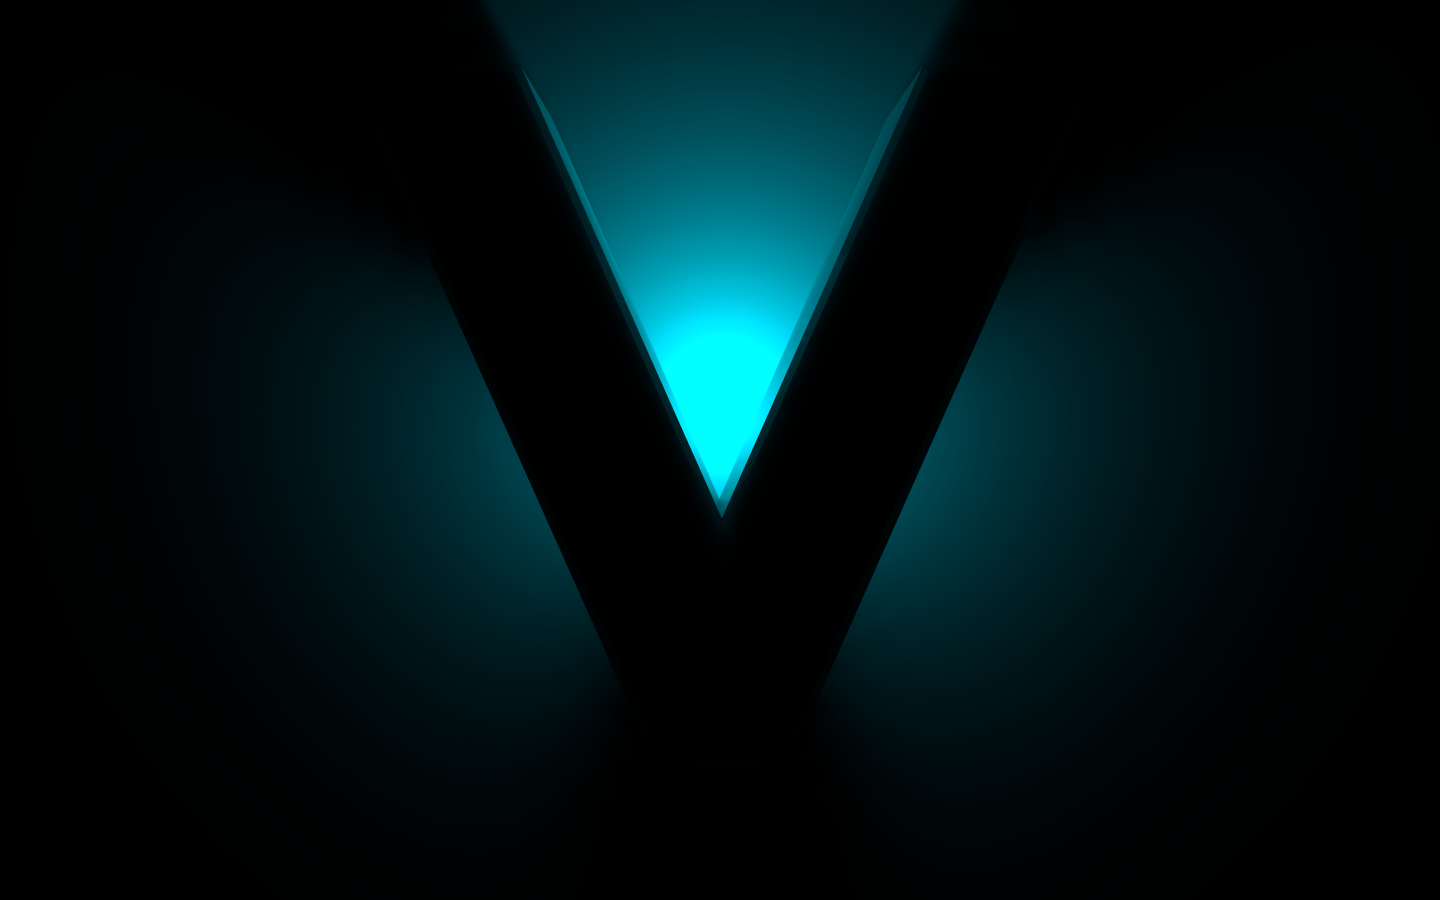 Big black V sign on a blue background